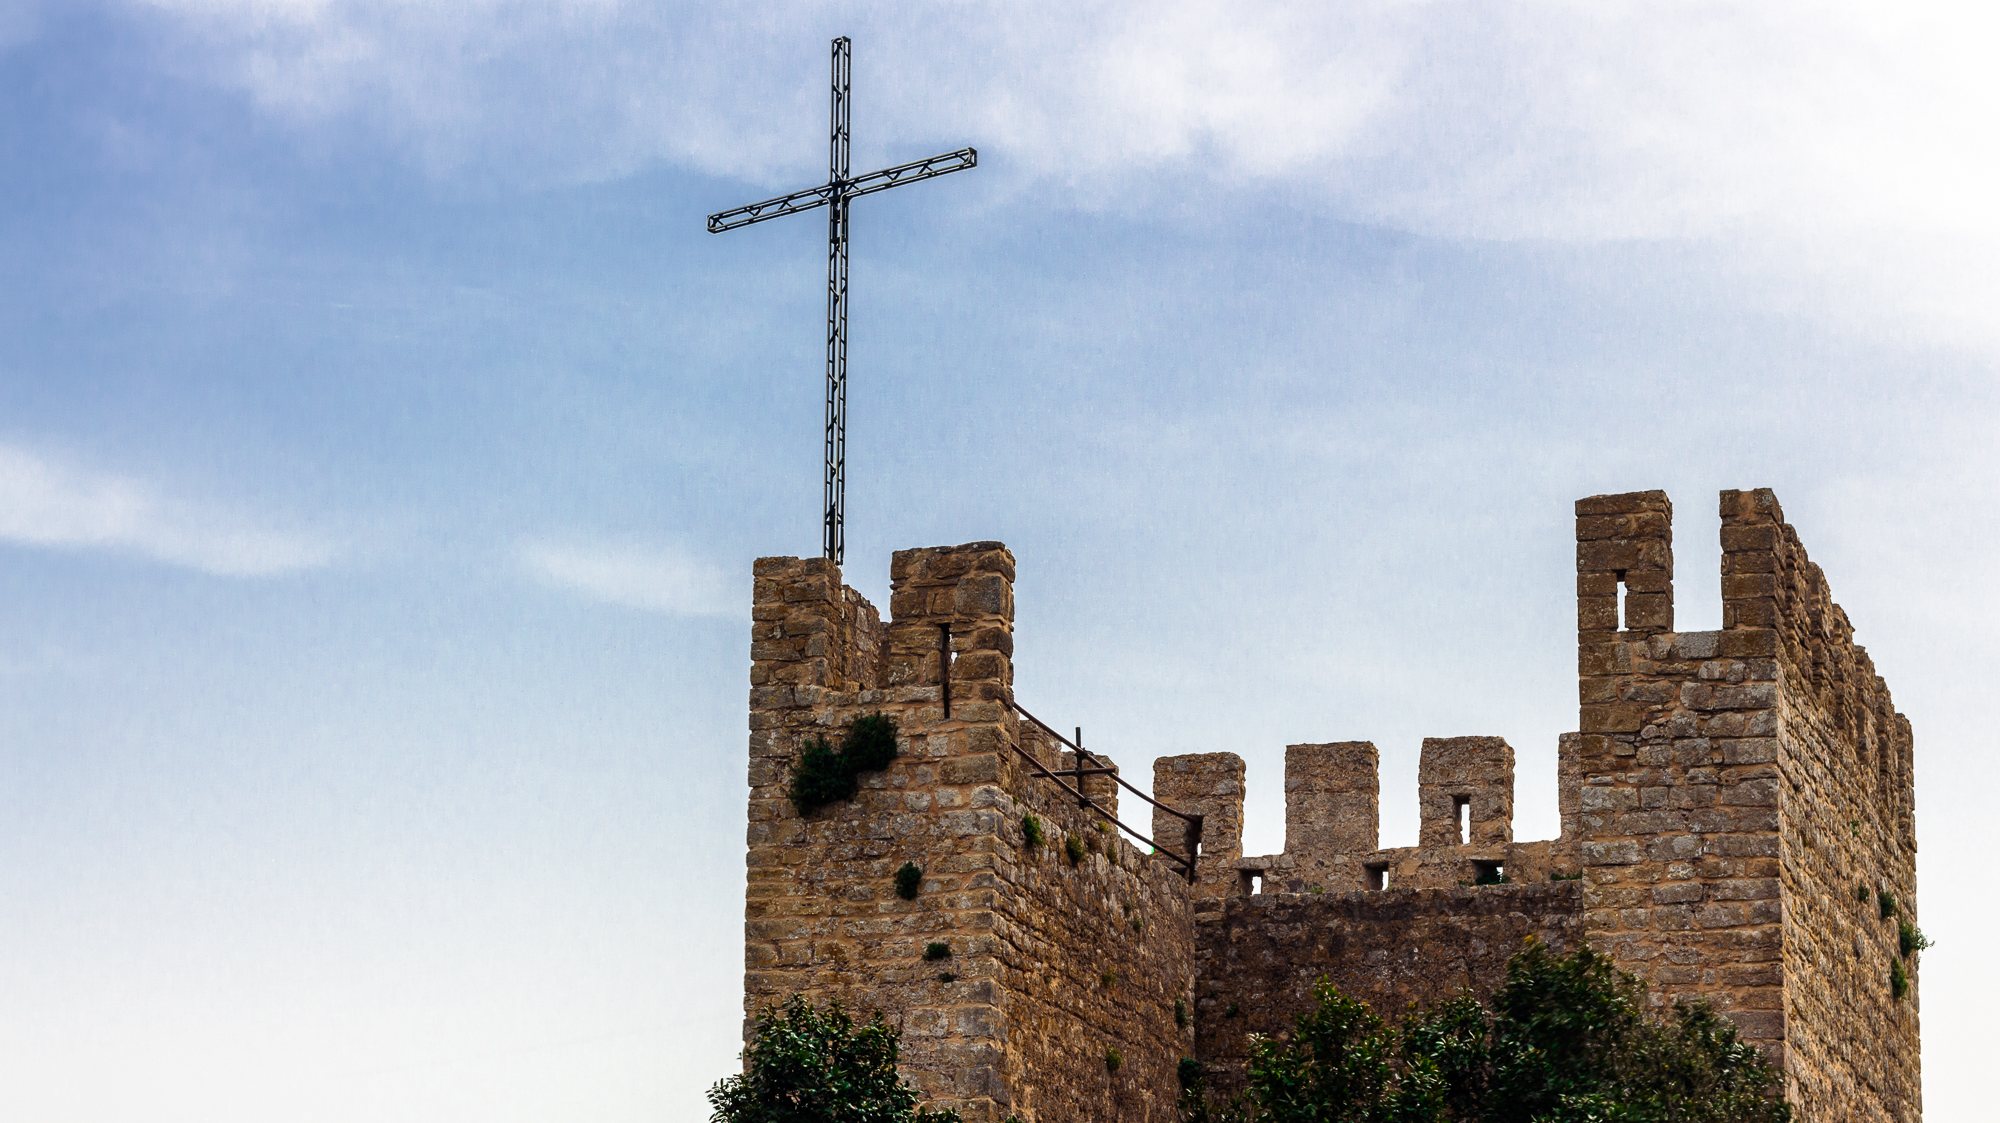 Algumas tradições foram canceladas em Óbidos, devido à pandemia. Mas a colocação da cruz no torreão manteve-se.